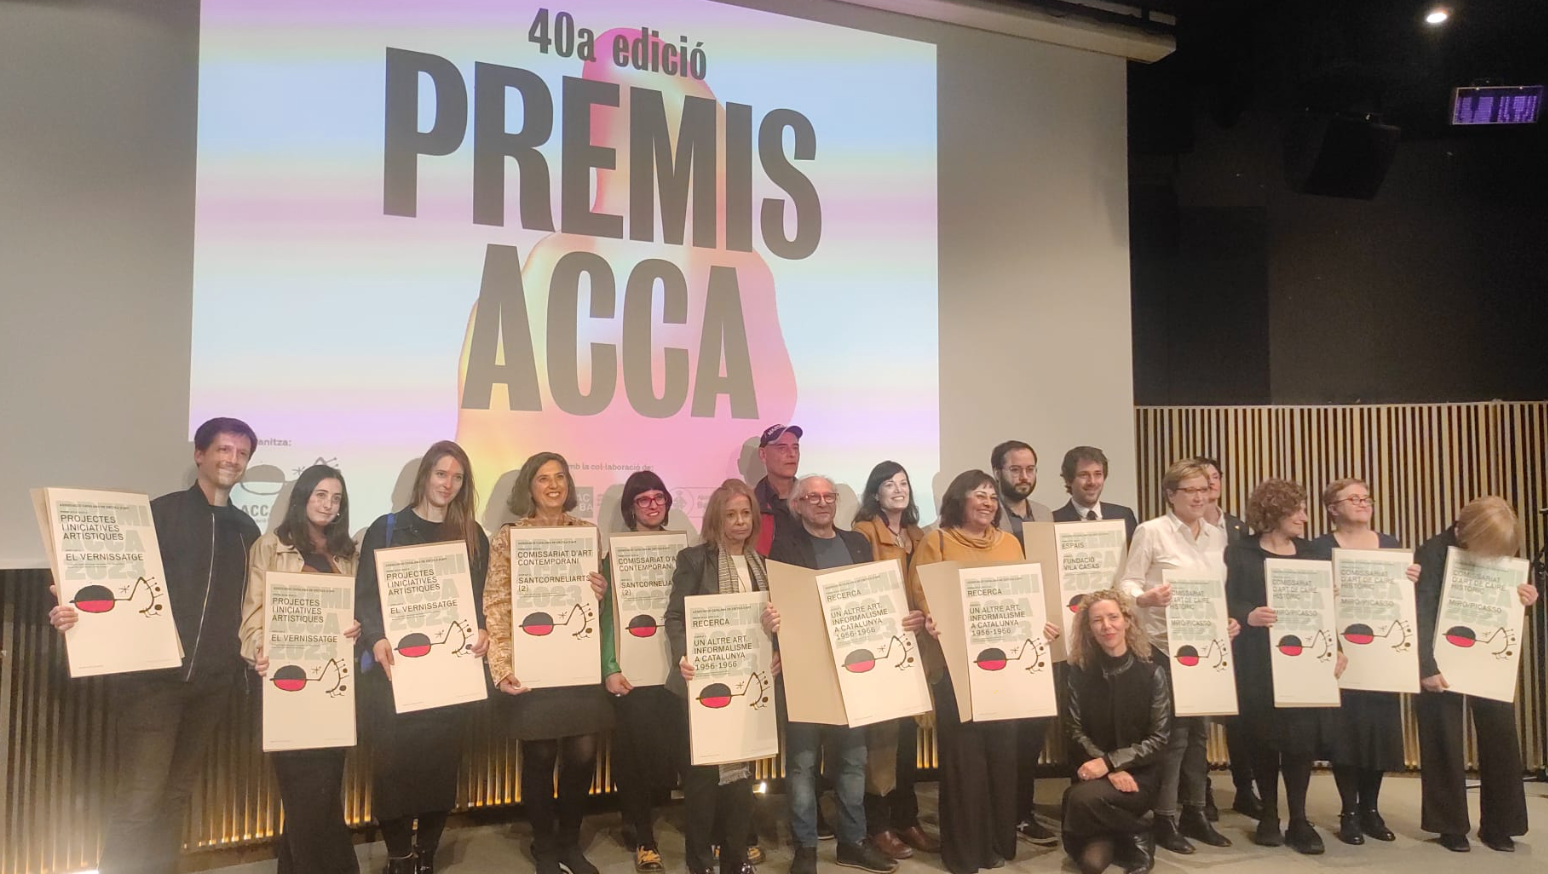 40a edició dels Premis ACCA